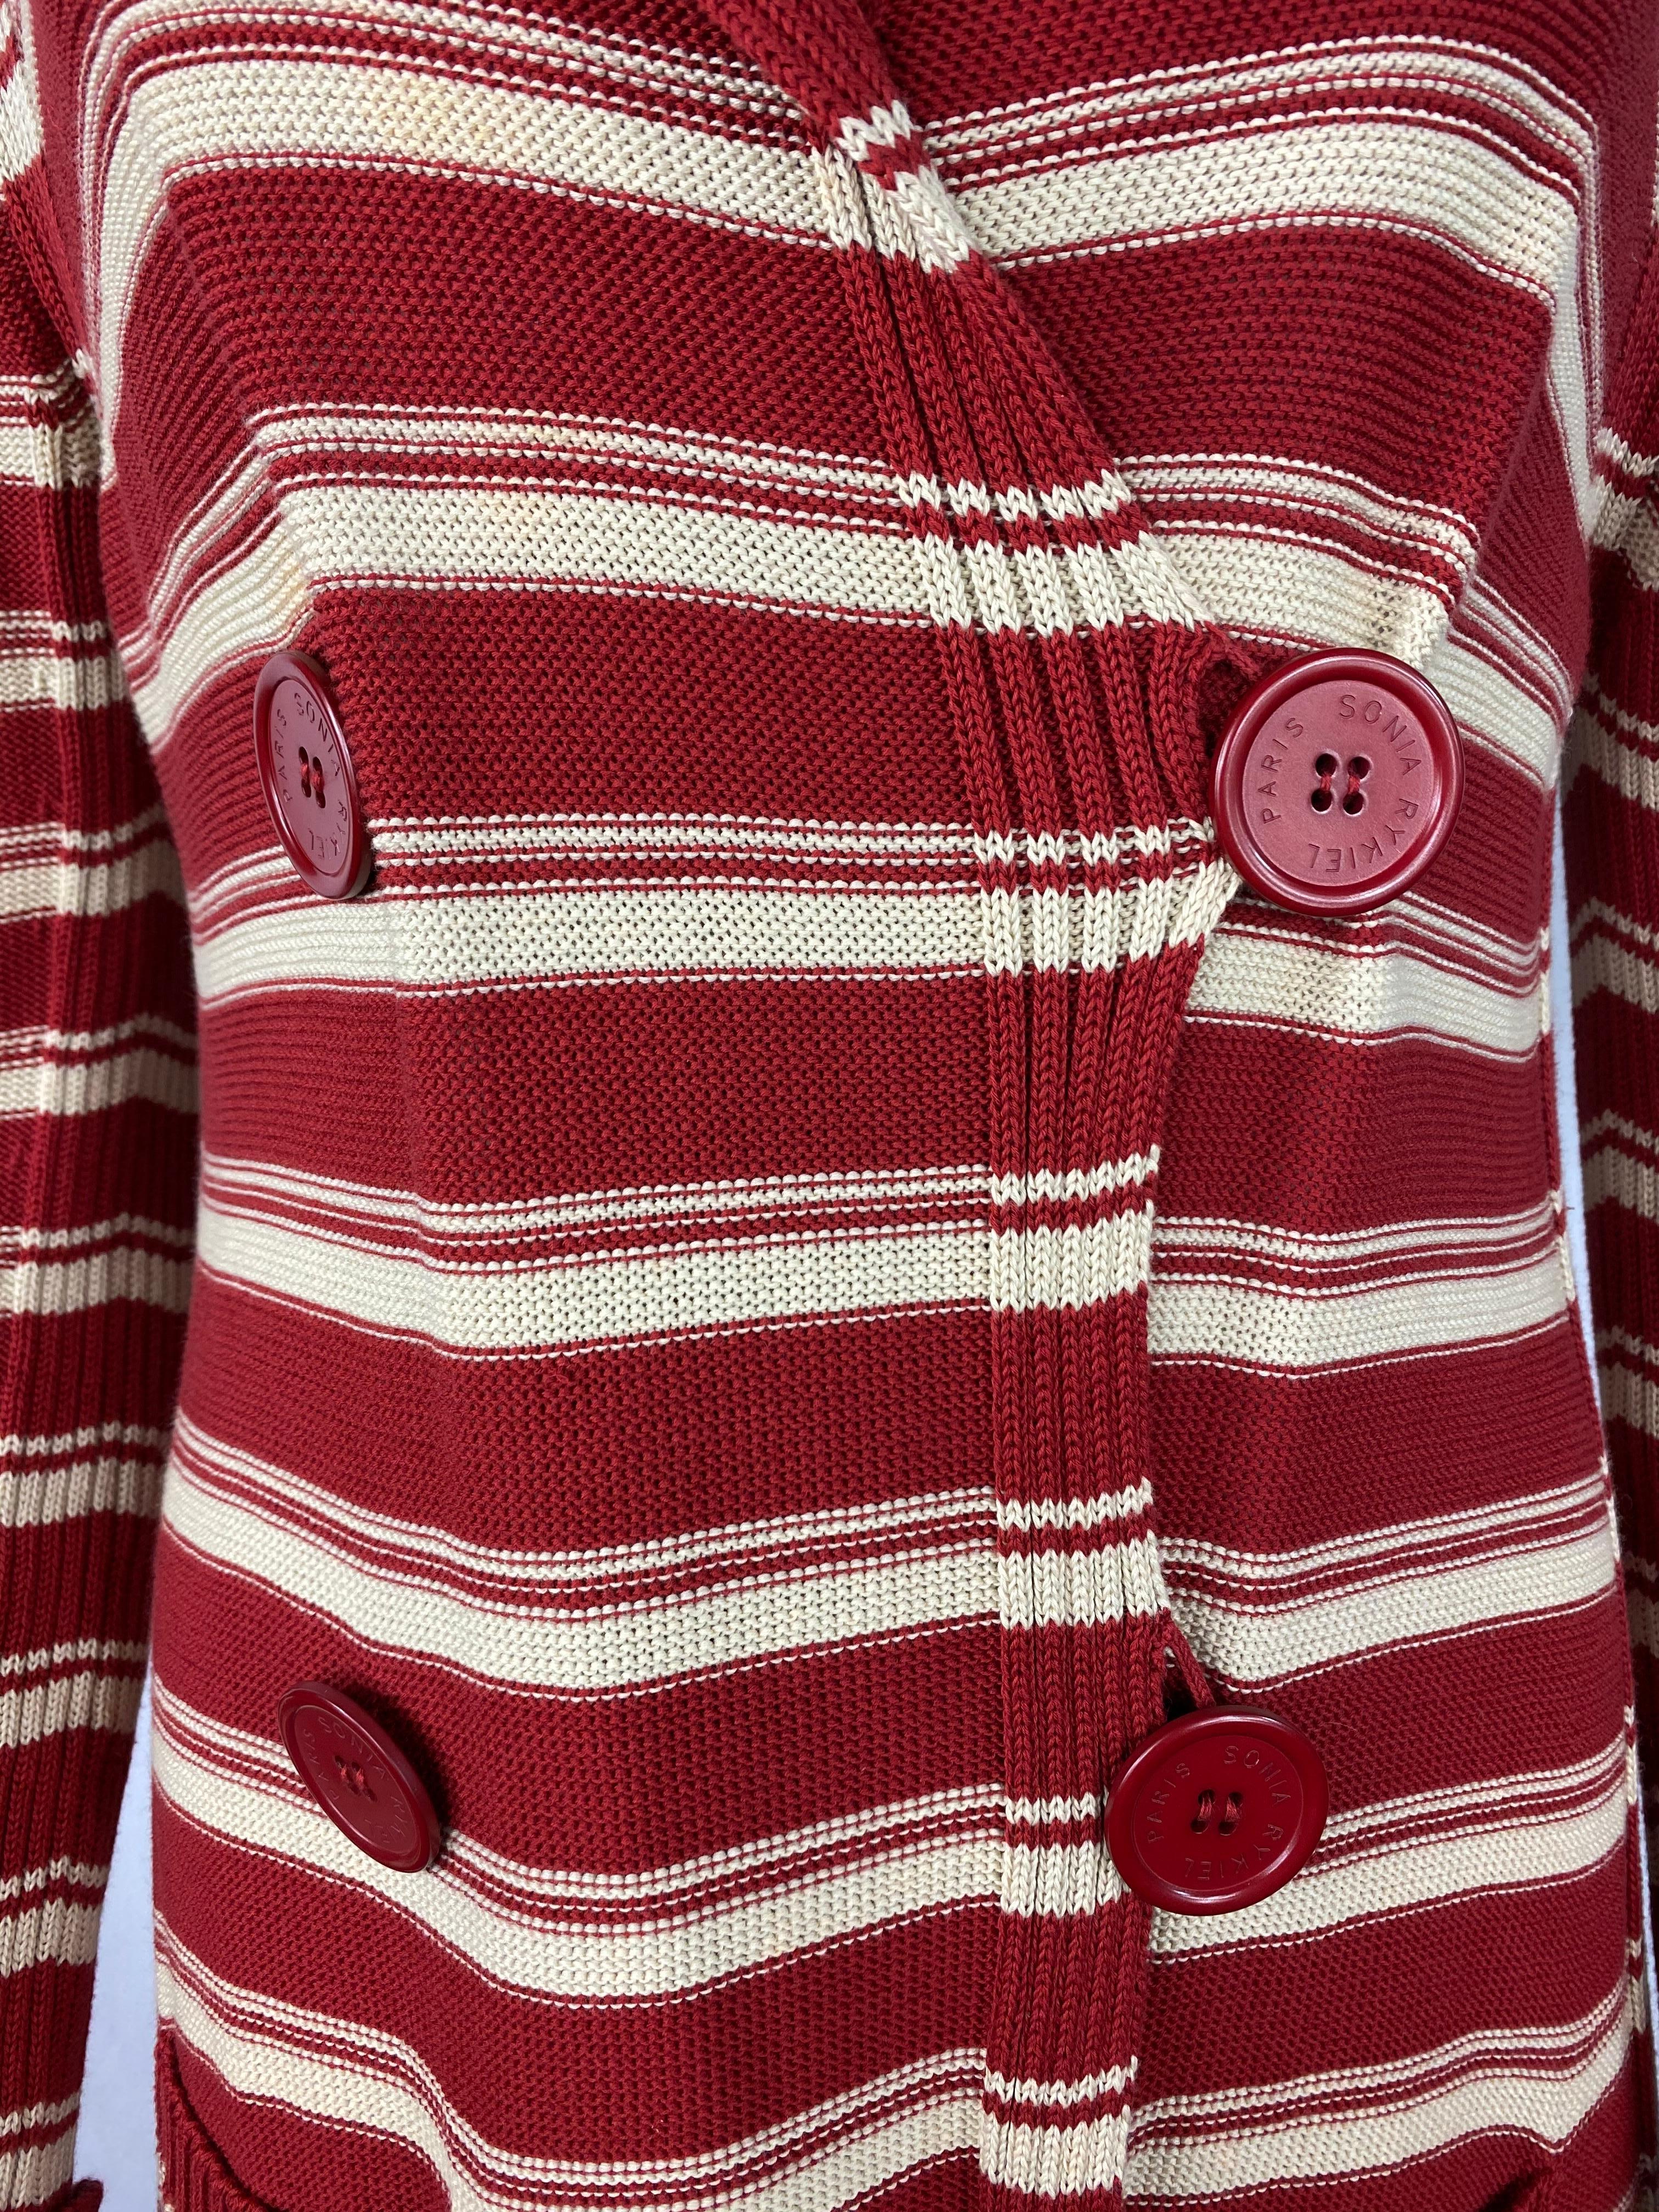 Détails du produit :

100% coton, motif rayé rouge et blanc, col, deux poches avant, quatre gros boutons rouges signés Sonia Rykiel Paris, longueur moyenne.
Fabriquées en Italie.